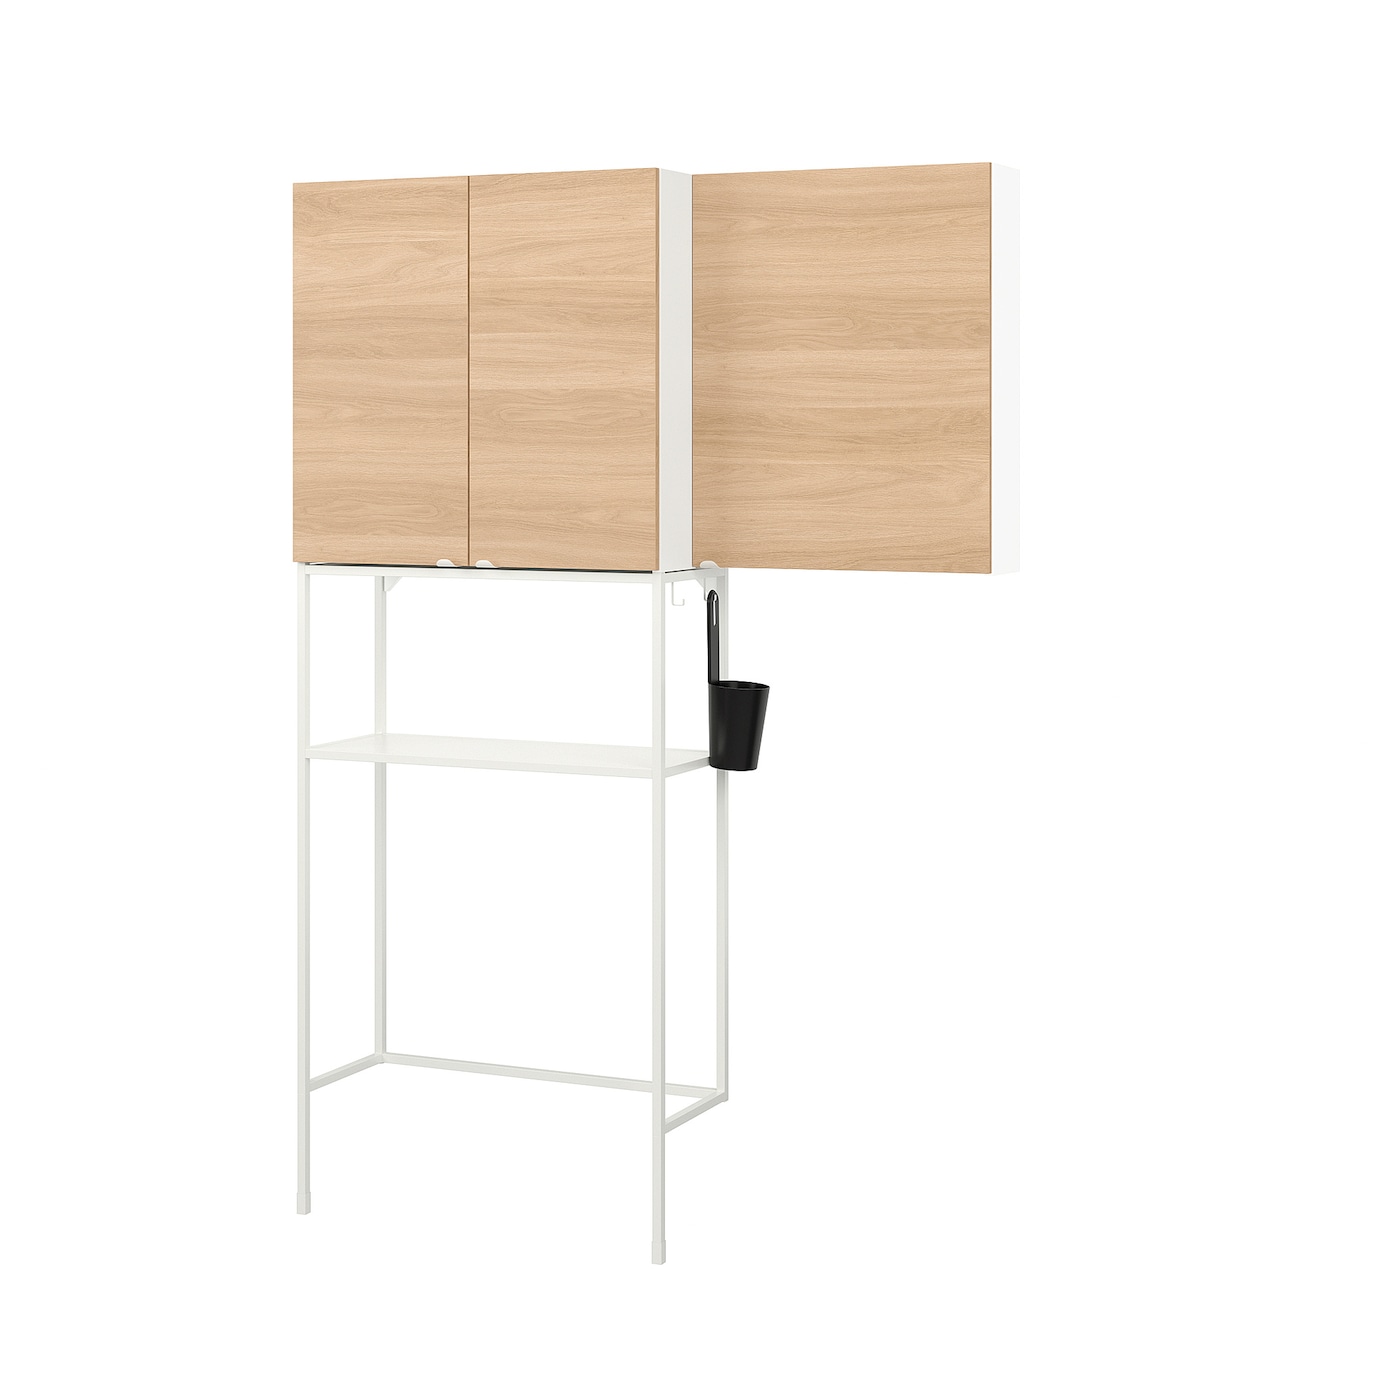 Комбинация шкафов  для прачечной и ванной - ENHET IKEA/ ЭНХЕТ ИКЕА,140x32x204 см, бежевая/белая